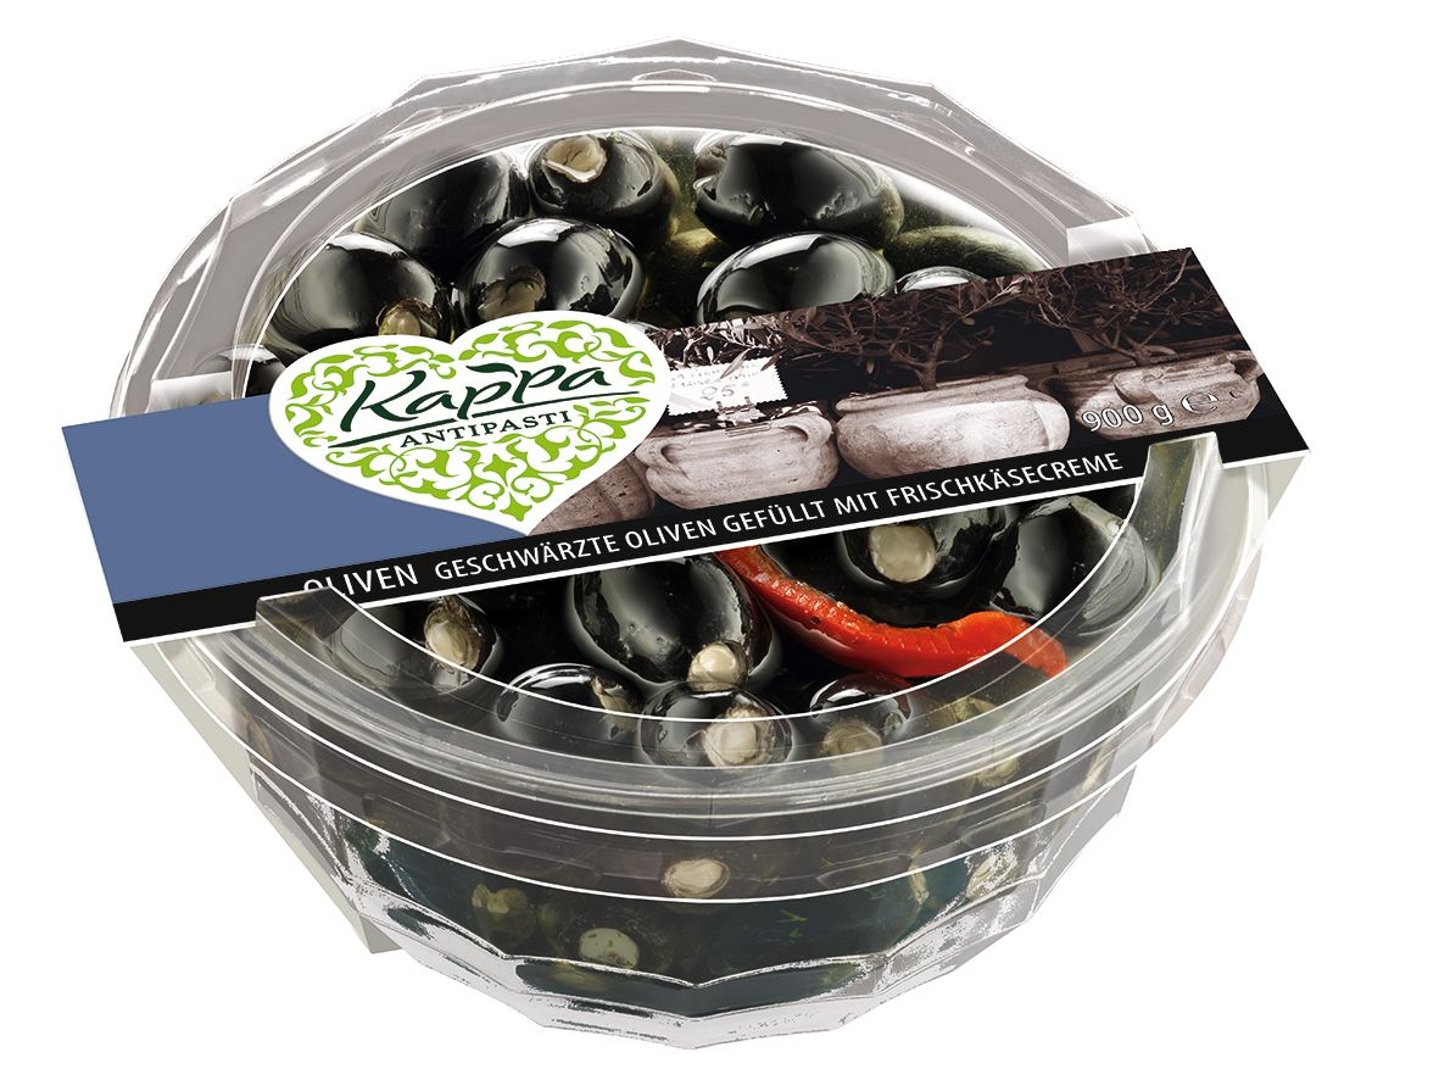 Kappa - Oliven gefüllt Schwarz Frischkäse gekühlt - 900 g Packung